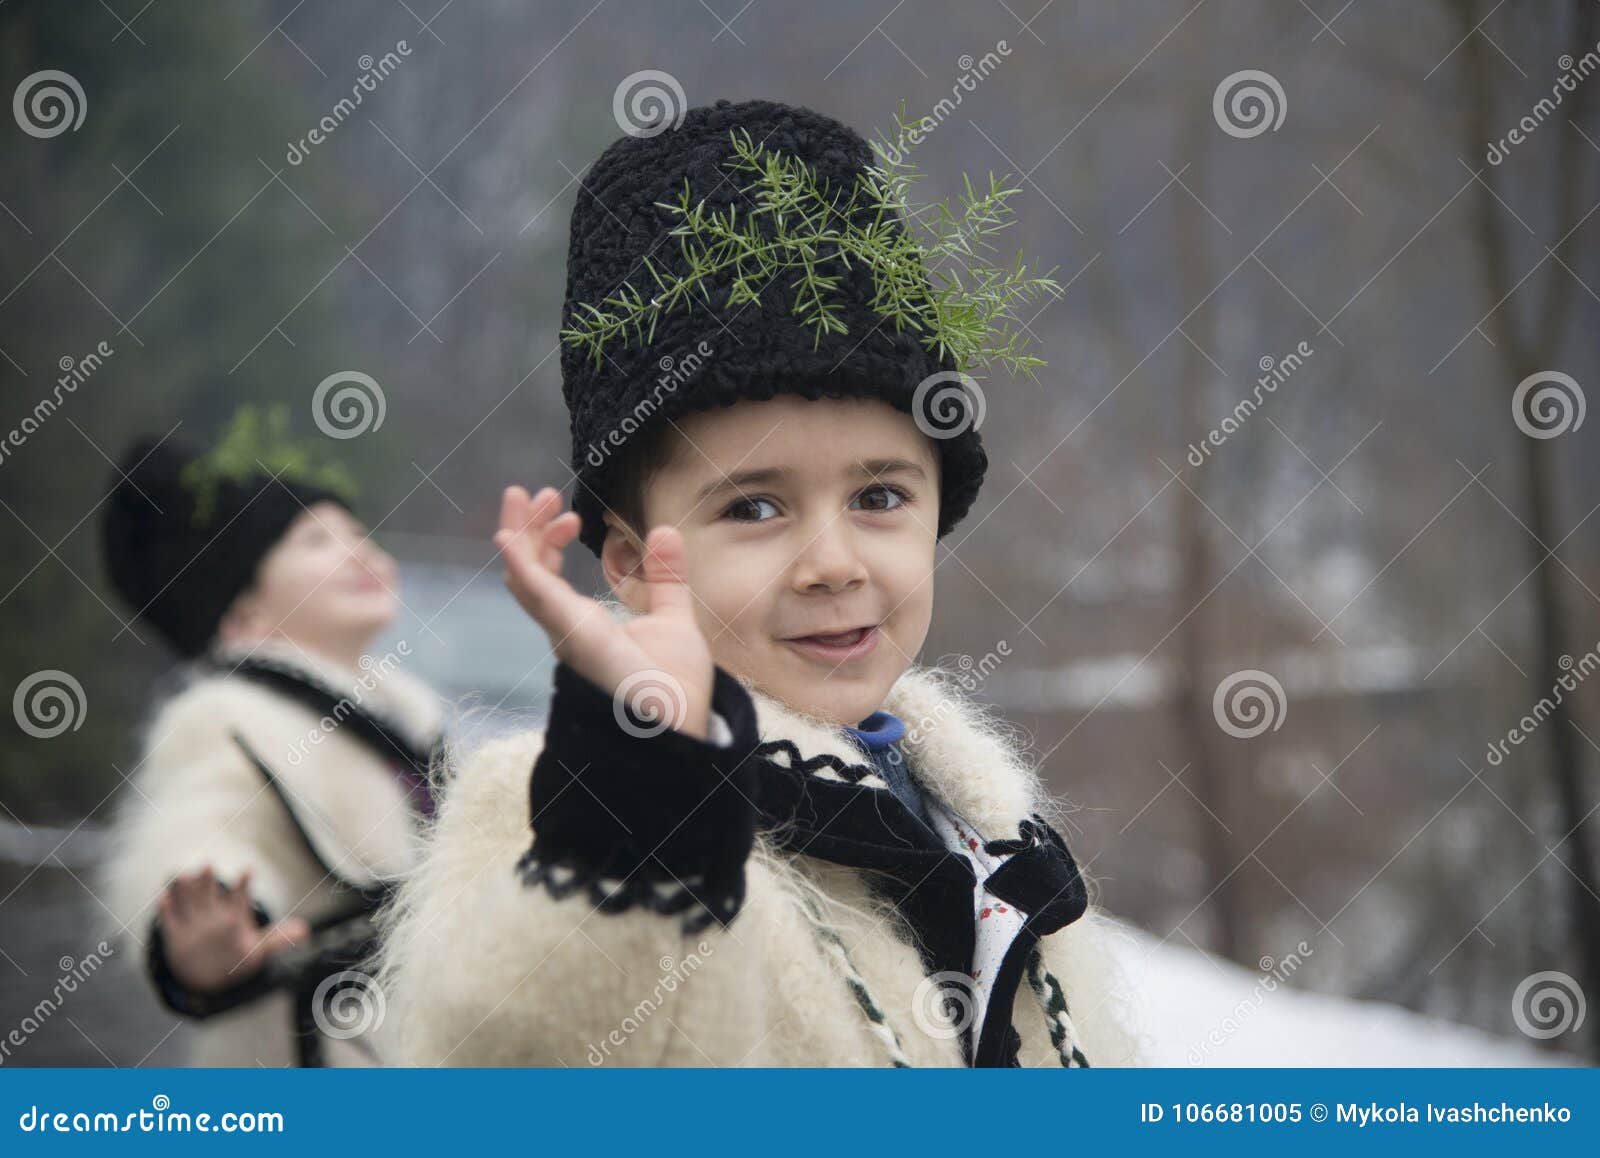 Τα αγόρια έντυσαν στα χειμερινά παραδοσιακά ρουμανικά ενδύματα. Τα αγόρια έντυσαν ενδύματα περιοχών χειμερινού στα παραδοσιακά ρουμανικά Maramuresh Εορτασμός Χριστουγέννων στη Ρουμανία